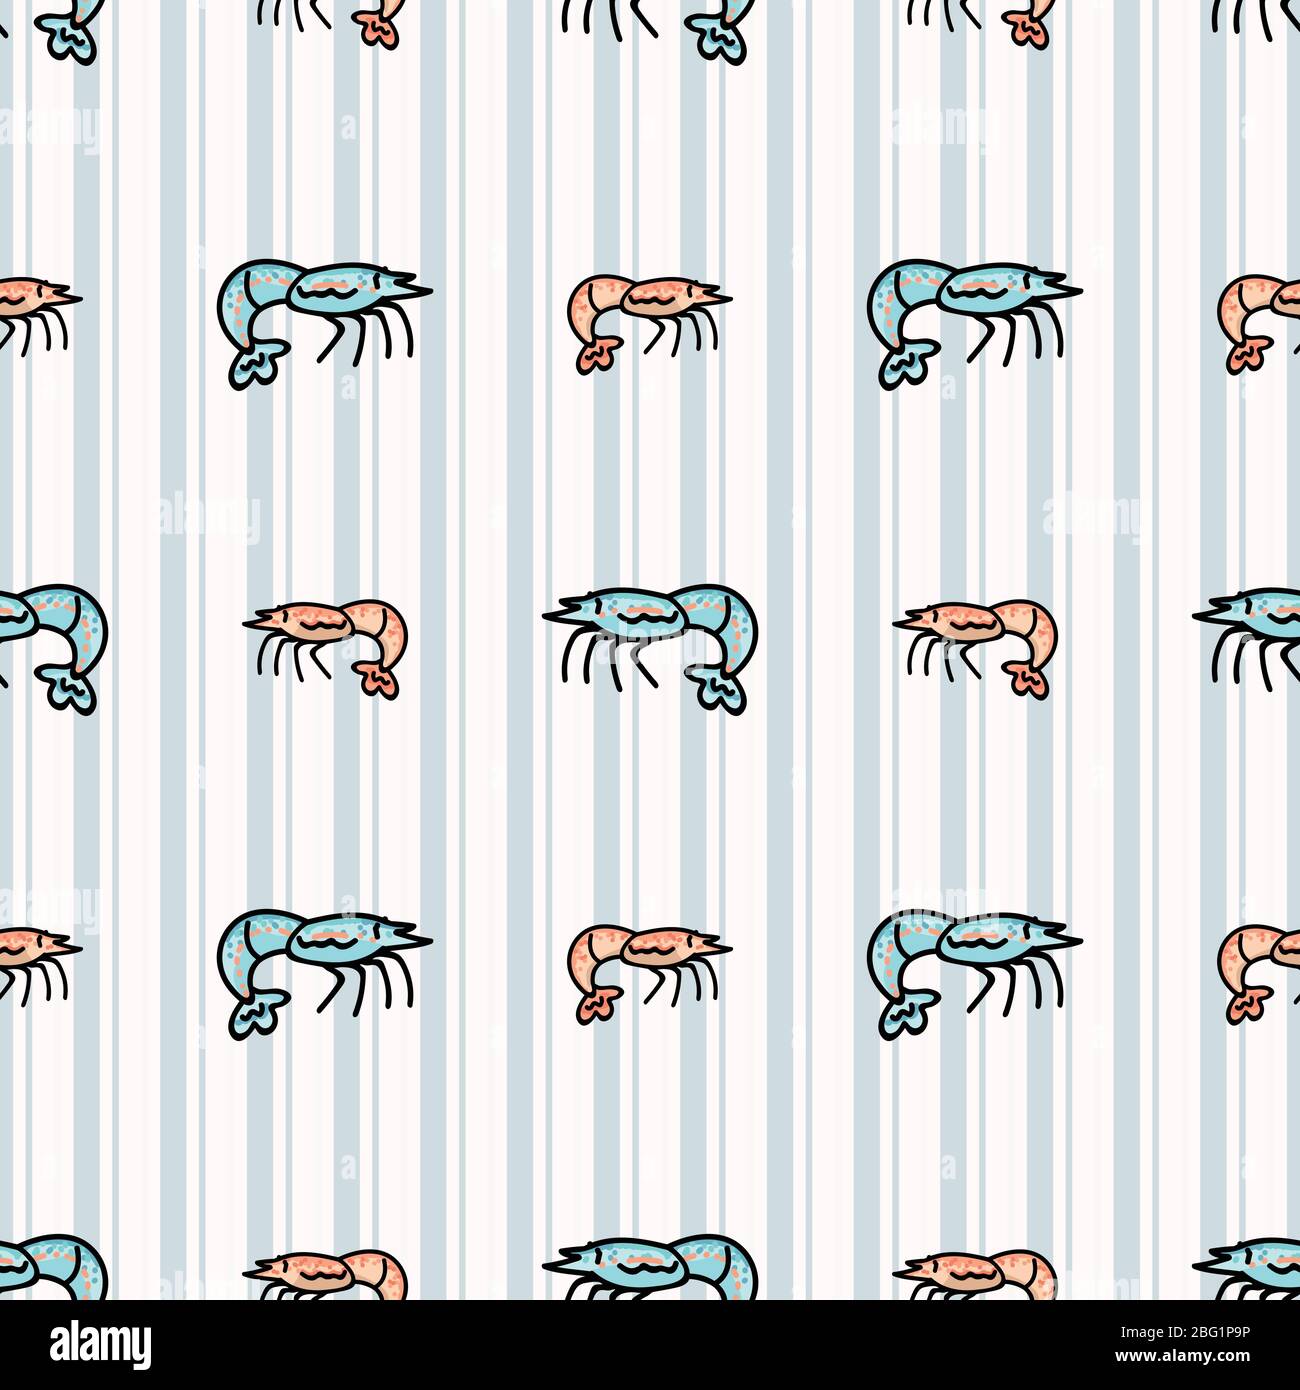 Nette Garnelen Cartoon nahtlose Vektor-Muster. Handgezeichnete Krustentiere für marine Leben Blog. Garnelenarthropod auf der ganzen Seite gedruckt. Meereswelt Hintergrund. Stock Vektor